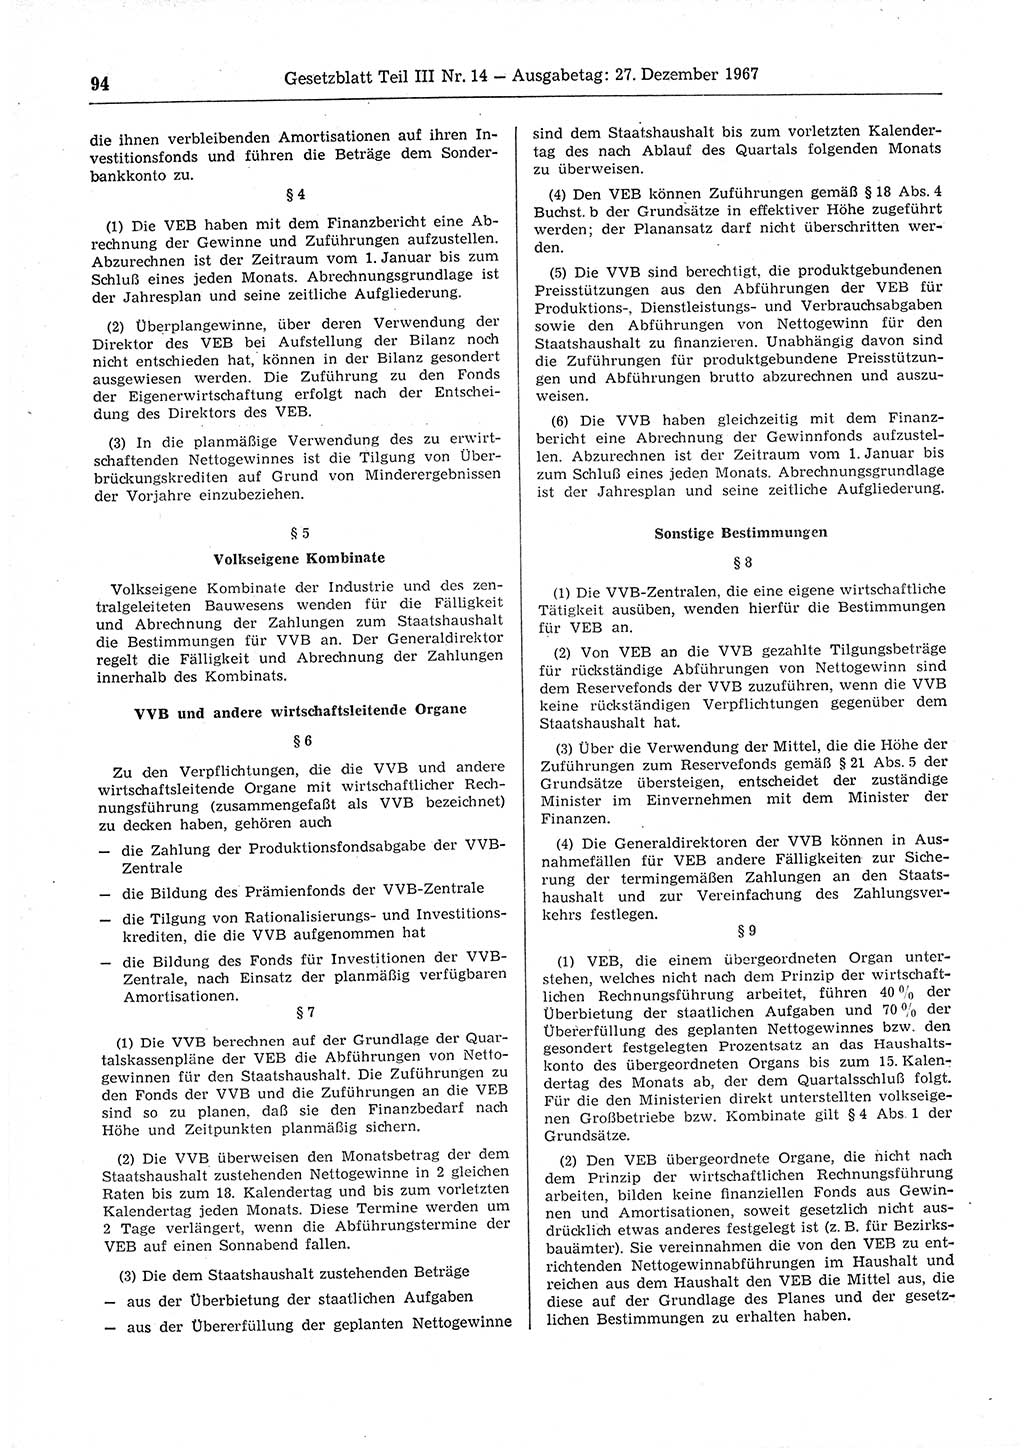 Gesetzblatt (GBl.) der Deutschen Demokratischen Republik (DDR) Teil ⅠⅠⅠ 1967, Seite 94 (GBl. DDR ⅠⅠⅠ 1967, S. 94)